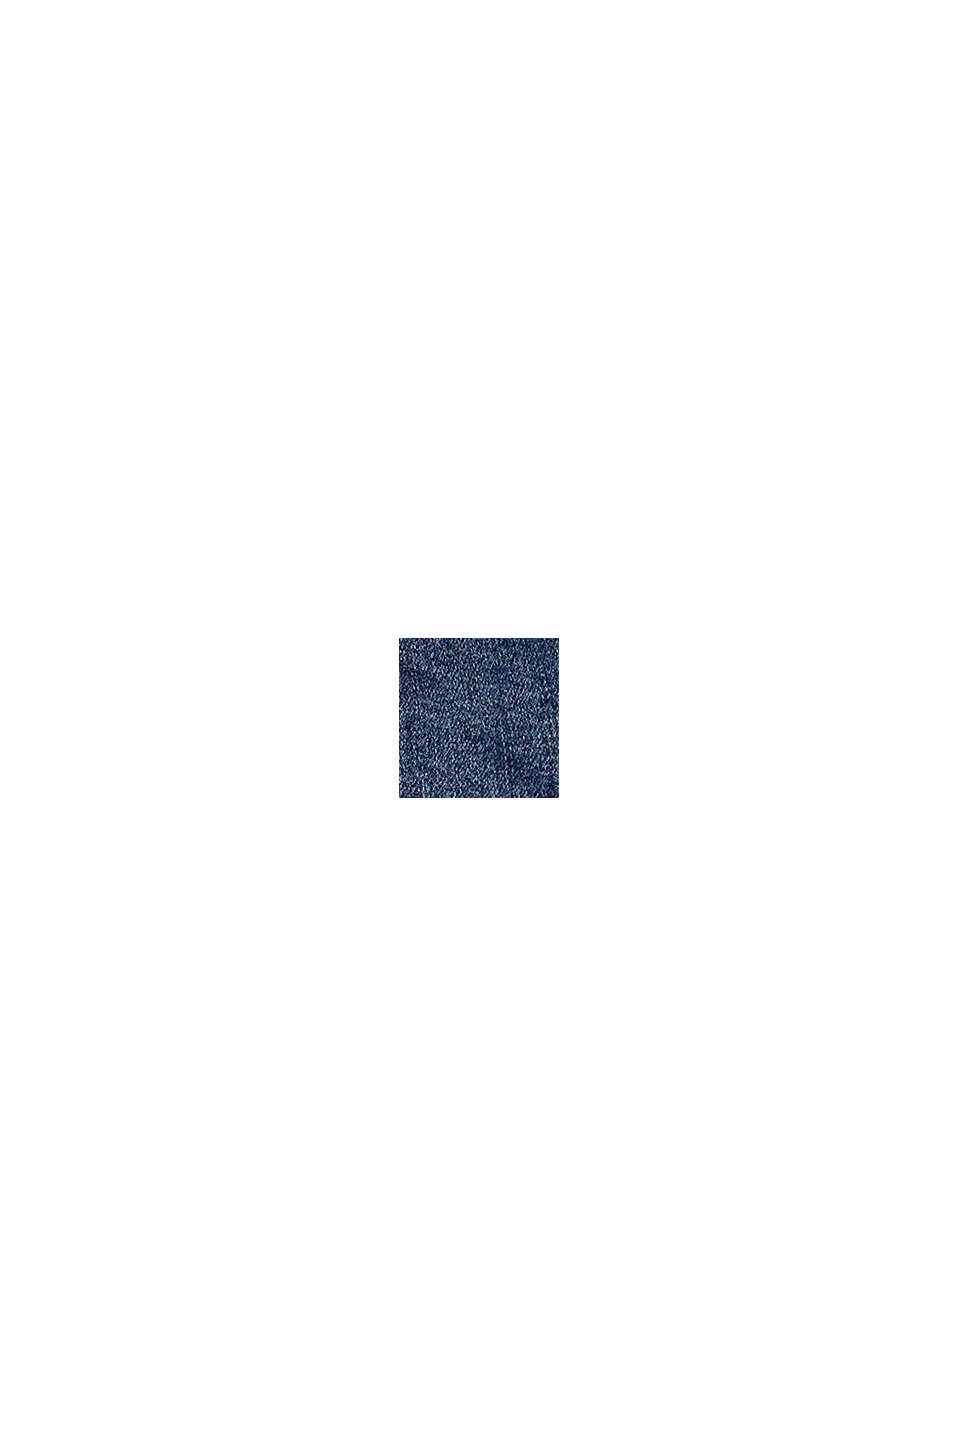 Jeans-Shorts aus Baumwolle, mit Verstellbund, BLUE MEDIUM WASHED, swatch